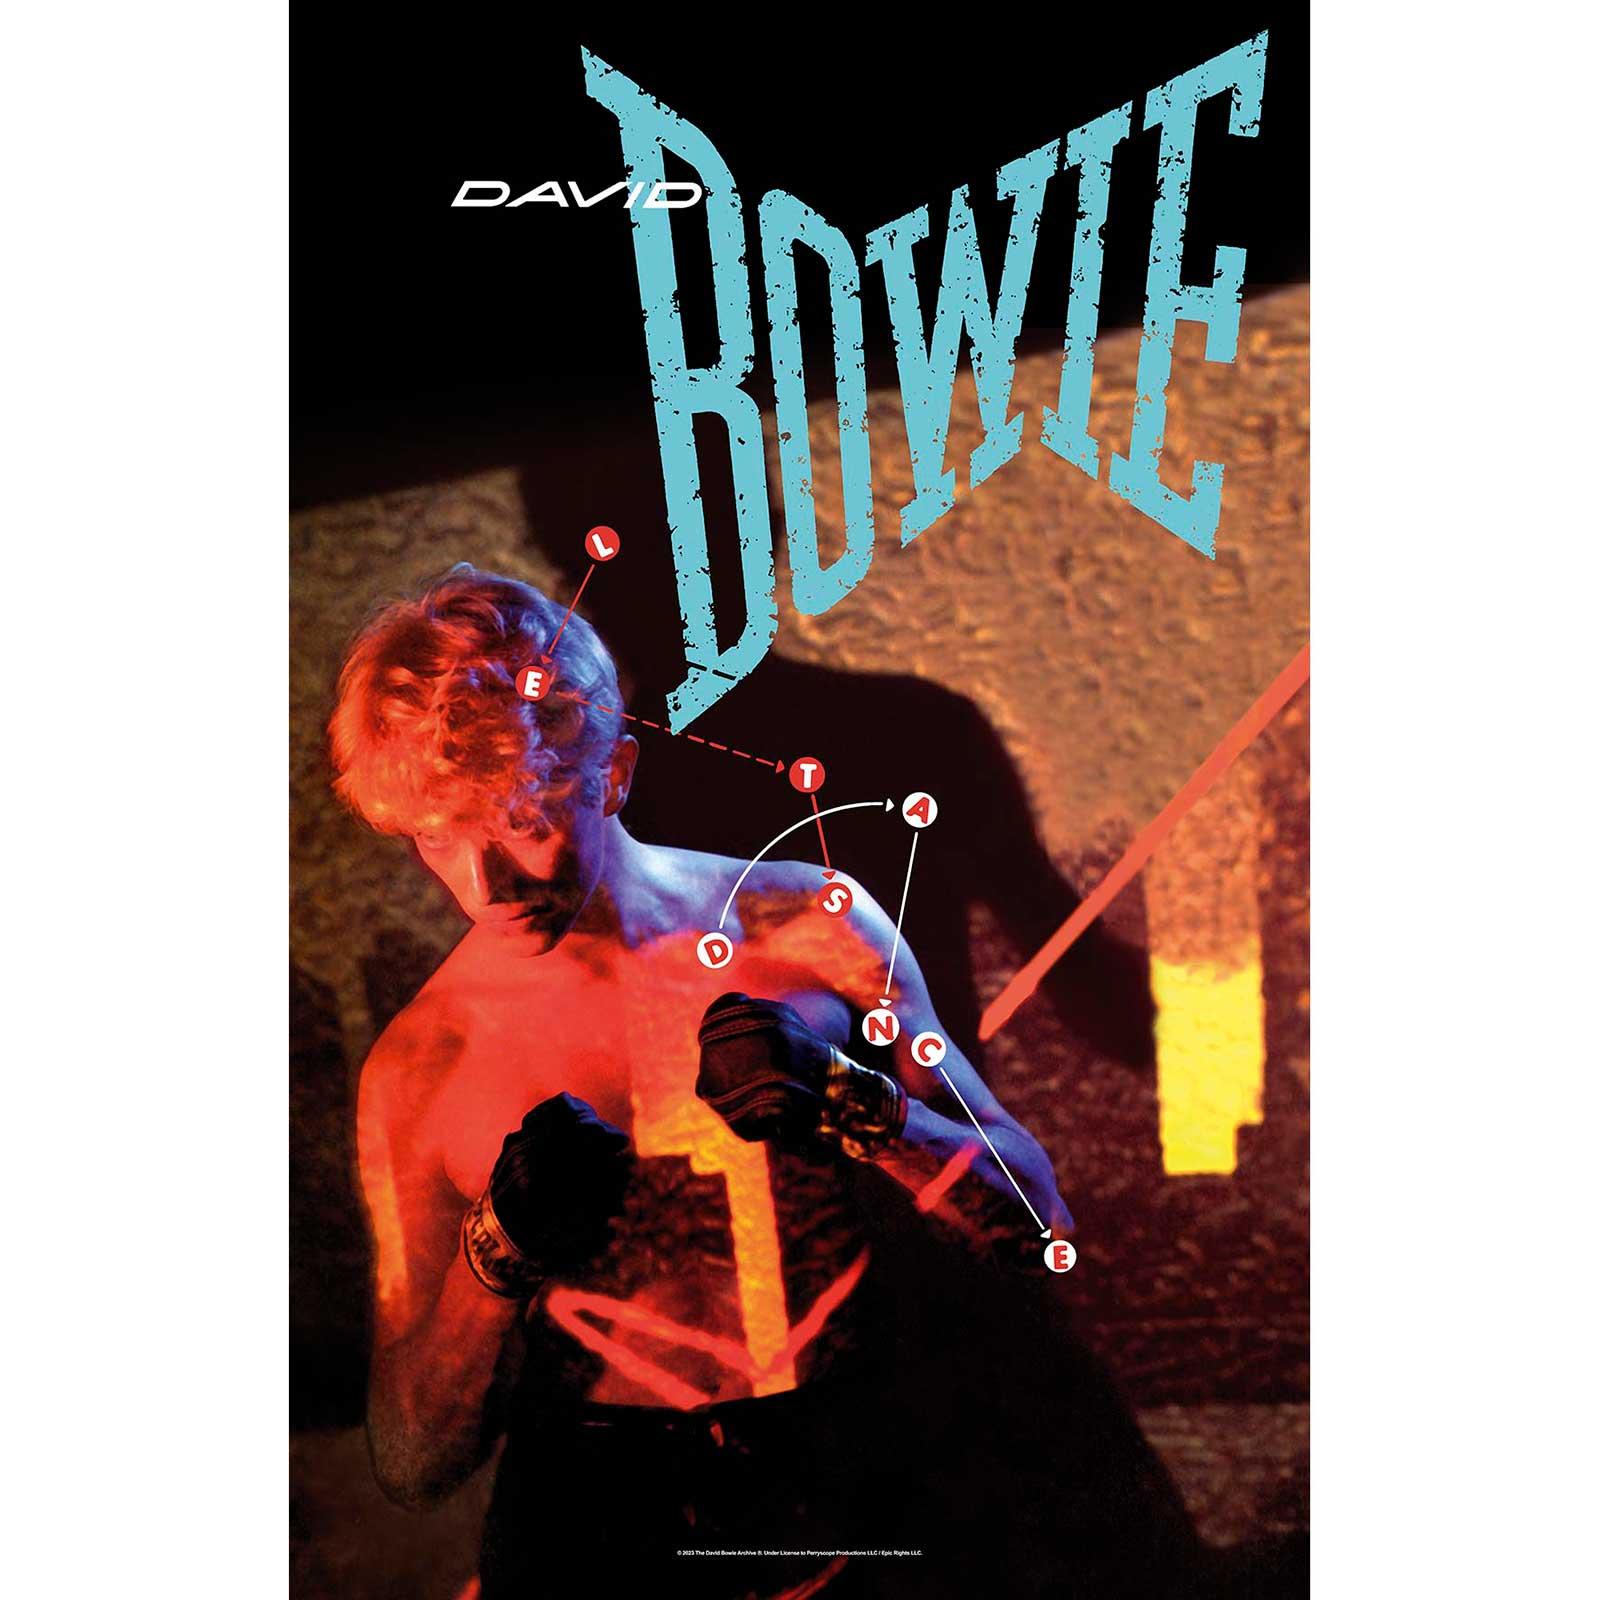 (デヴィッド ボウイ) David Bowie オフィシャル商品 Let´s Dance テキスタイルポスター 布製 ポスター 【海外通販】